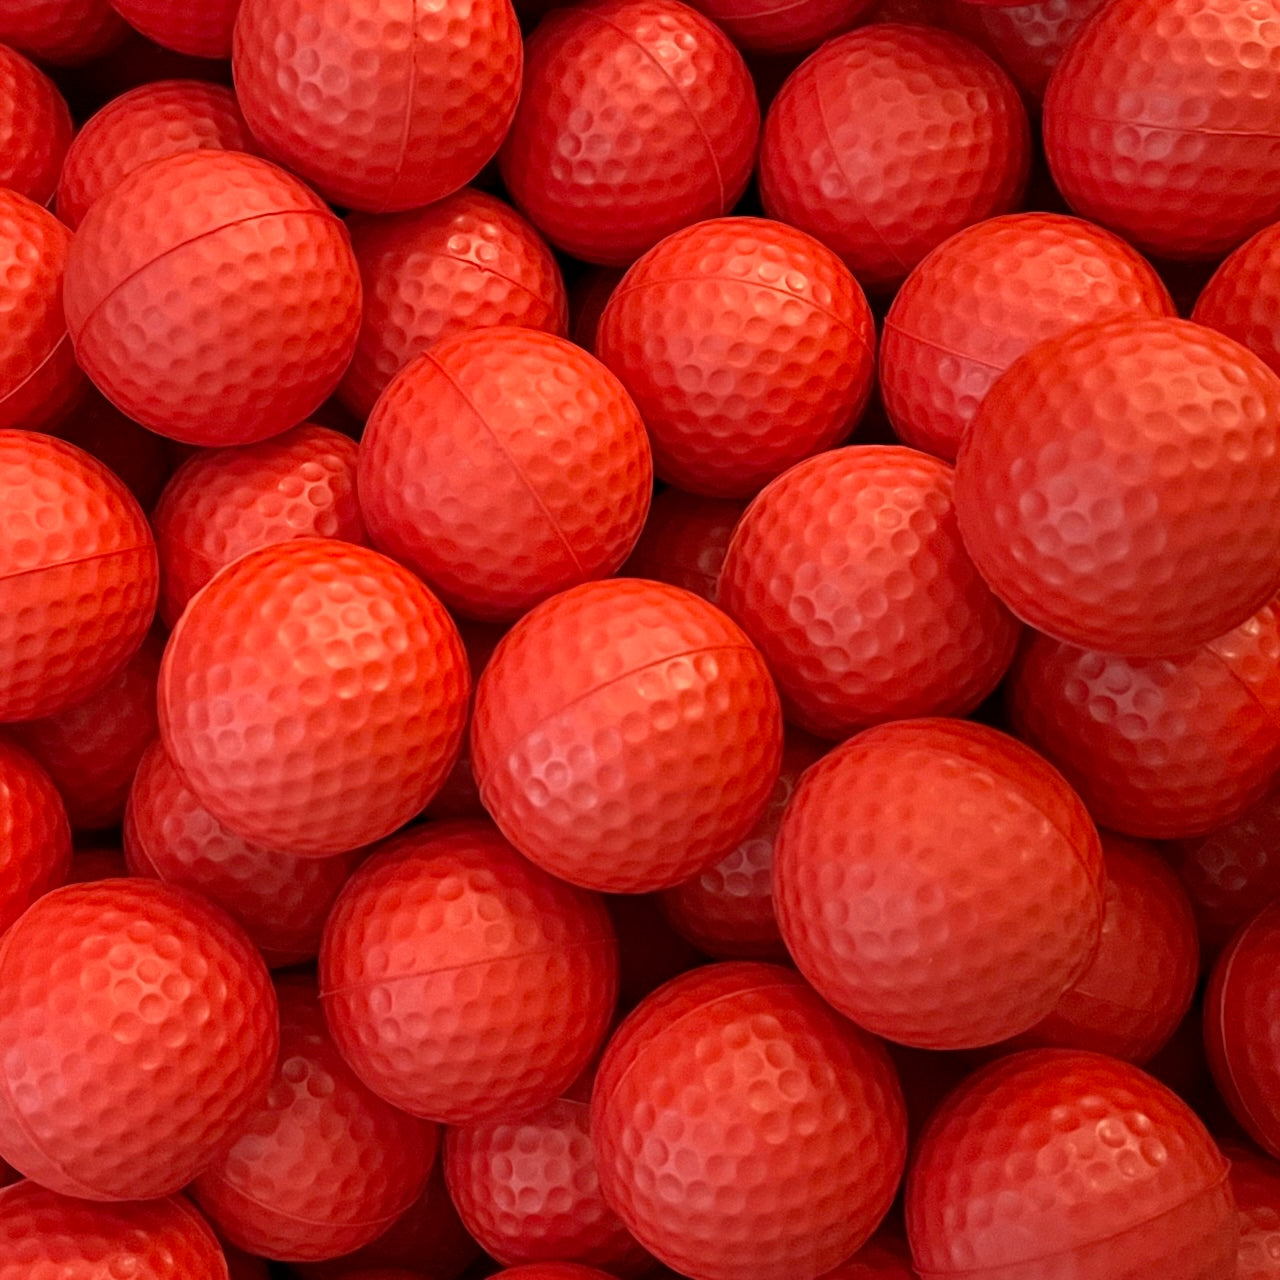 Premium-Golfbälle aus weichem Schaumstoff für Schwungtraining im Innen- und Außenbereich – Farbe auswählen